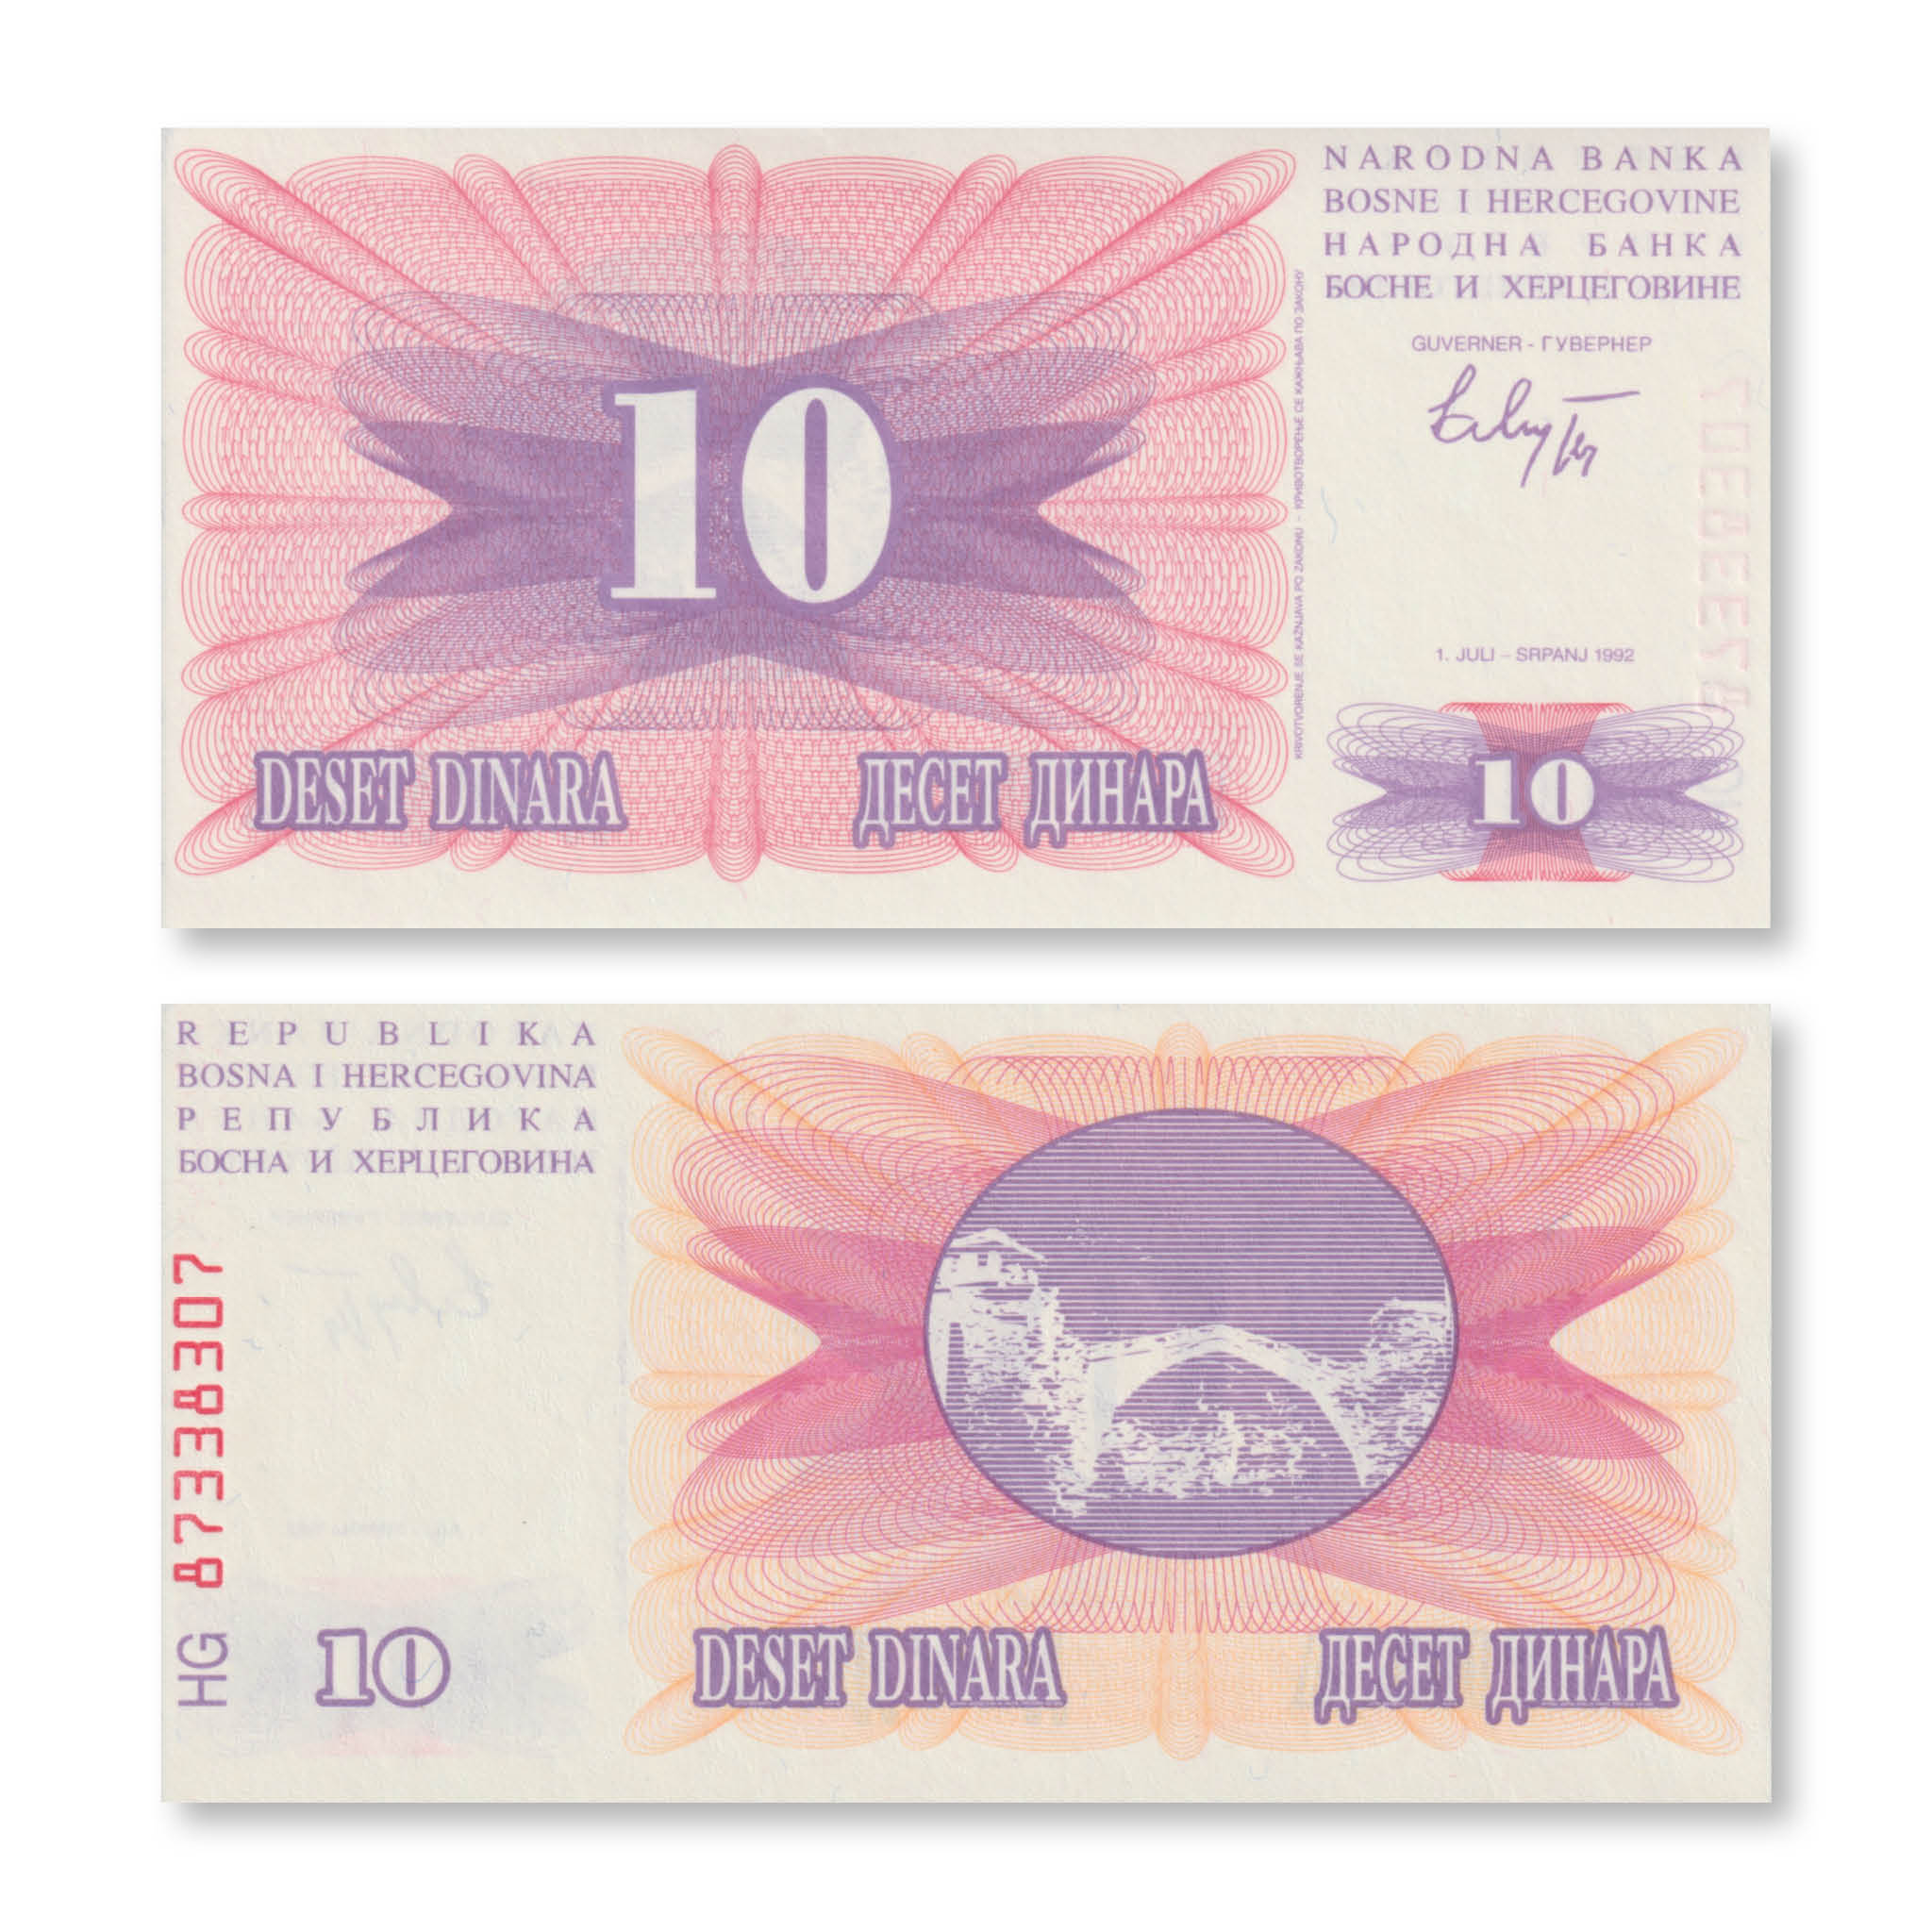 Bosnia 10 Dinars, 1992, B113a, P10a, UNC - Robert's World Money - World Banknotes